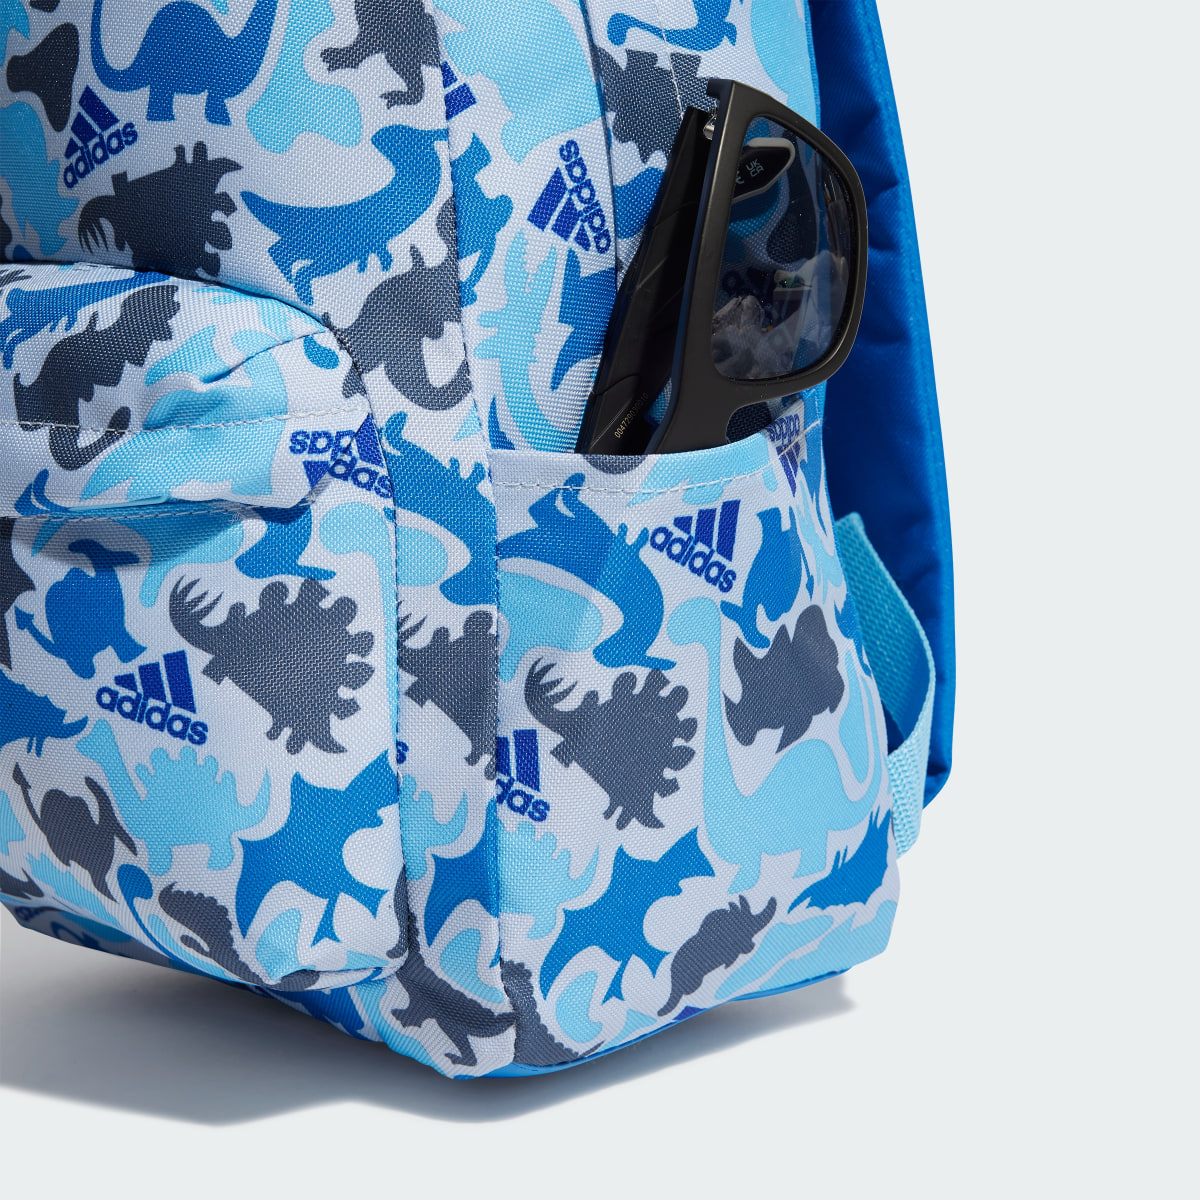 Adidas Printed Backpack Kids. 6